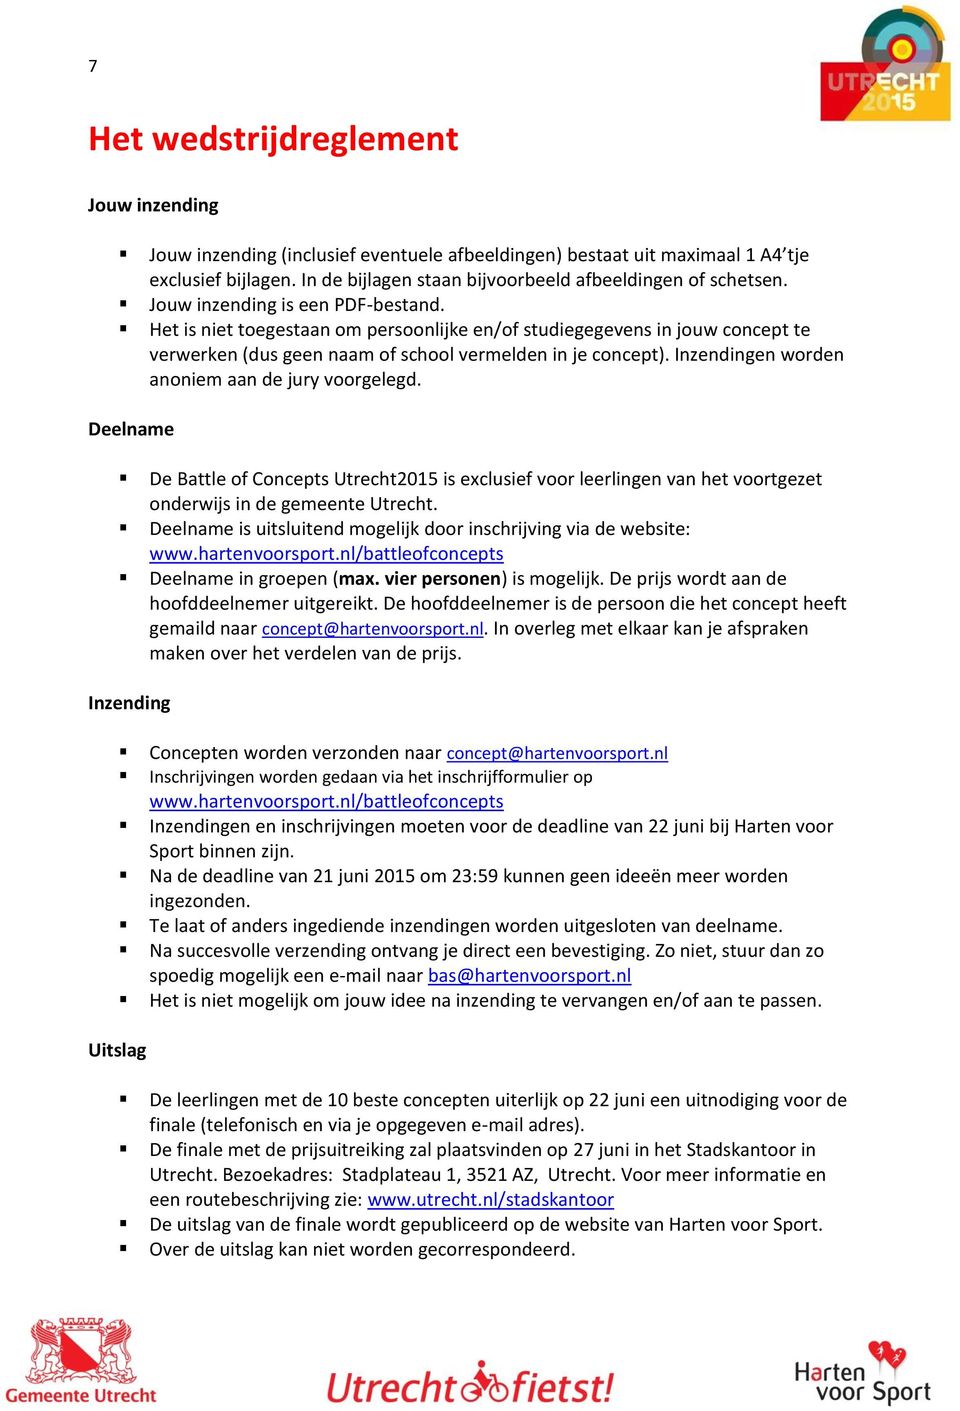 Inzendingen worden anoniem aan de jury voorgelegd. Deelname De Battle of Concepts Utrecht2015 is exclusief voor leerlingen van het voortgezet onderwijs in de gemeente Utrecht.